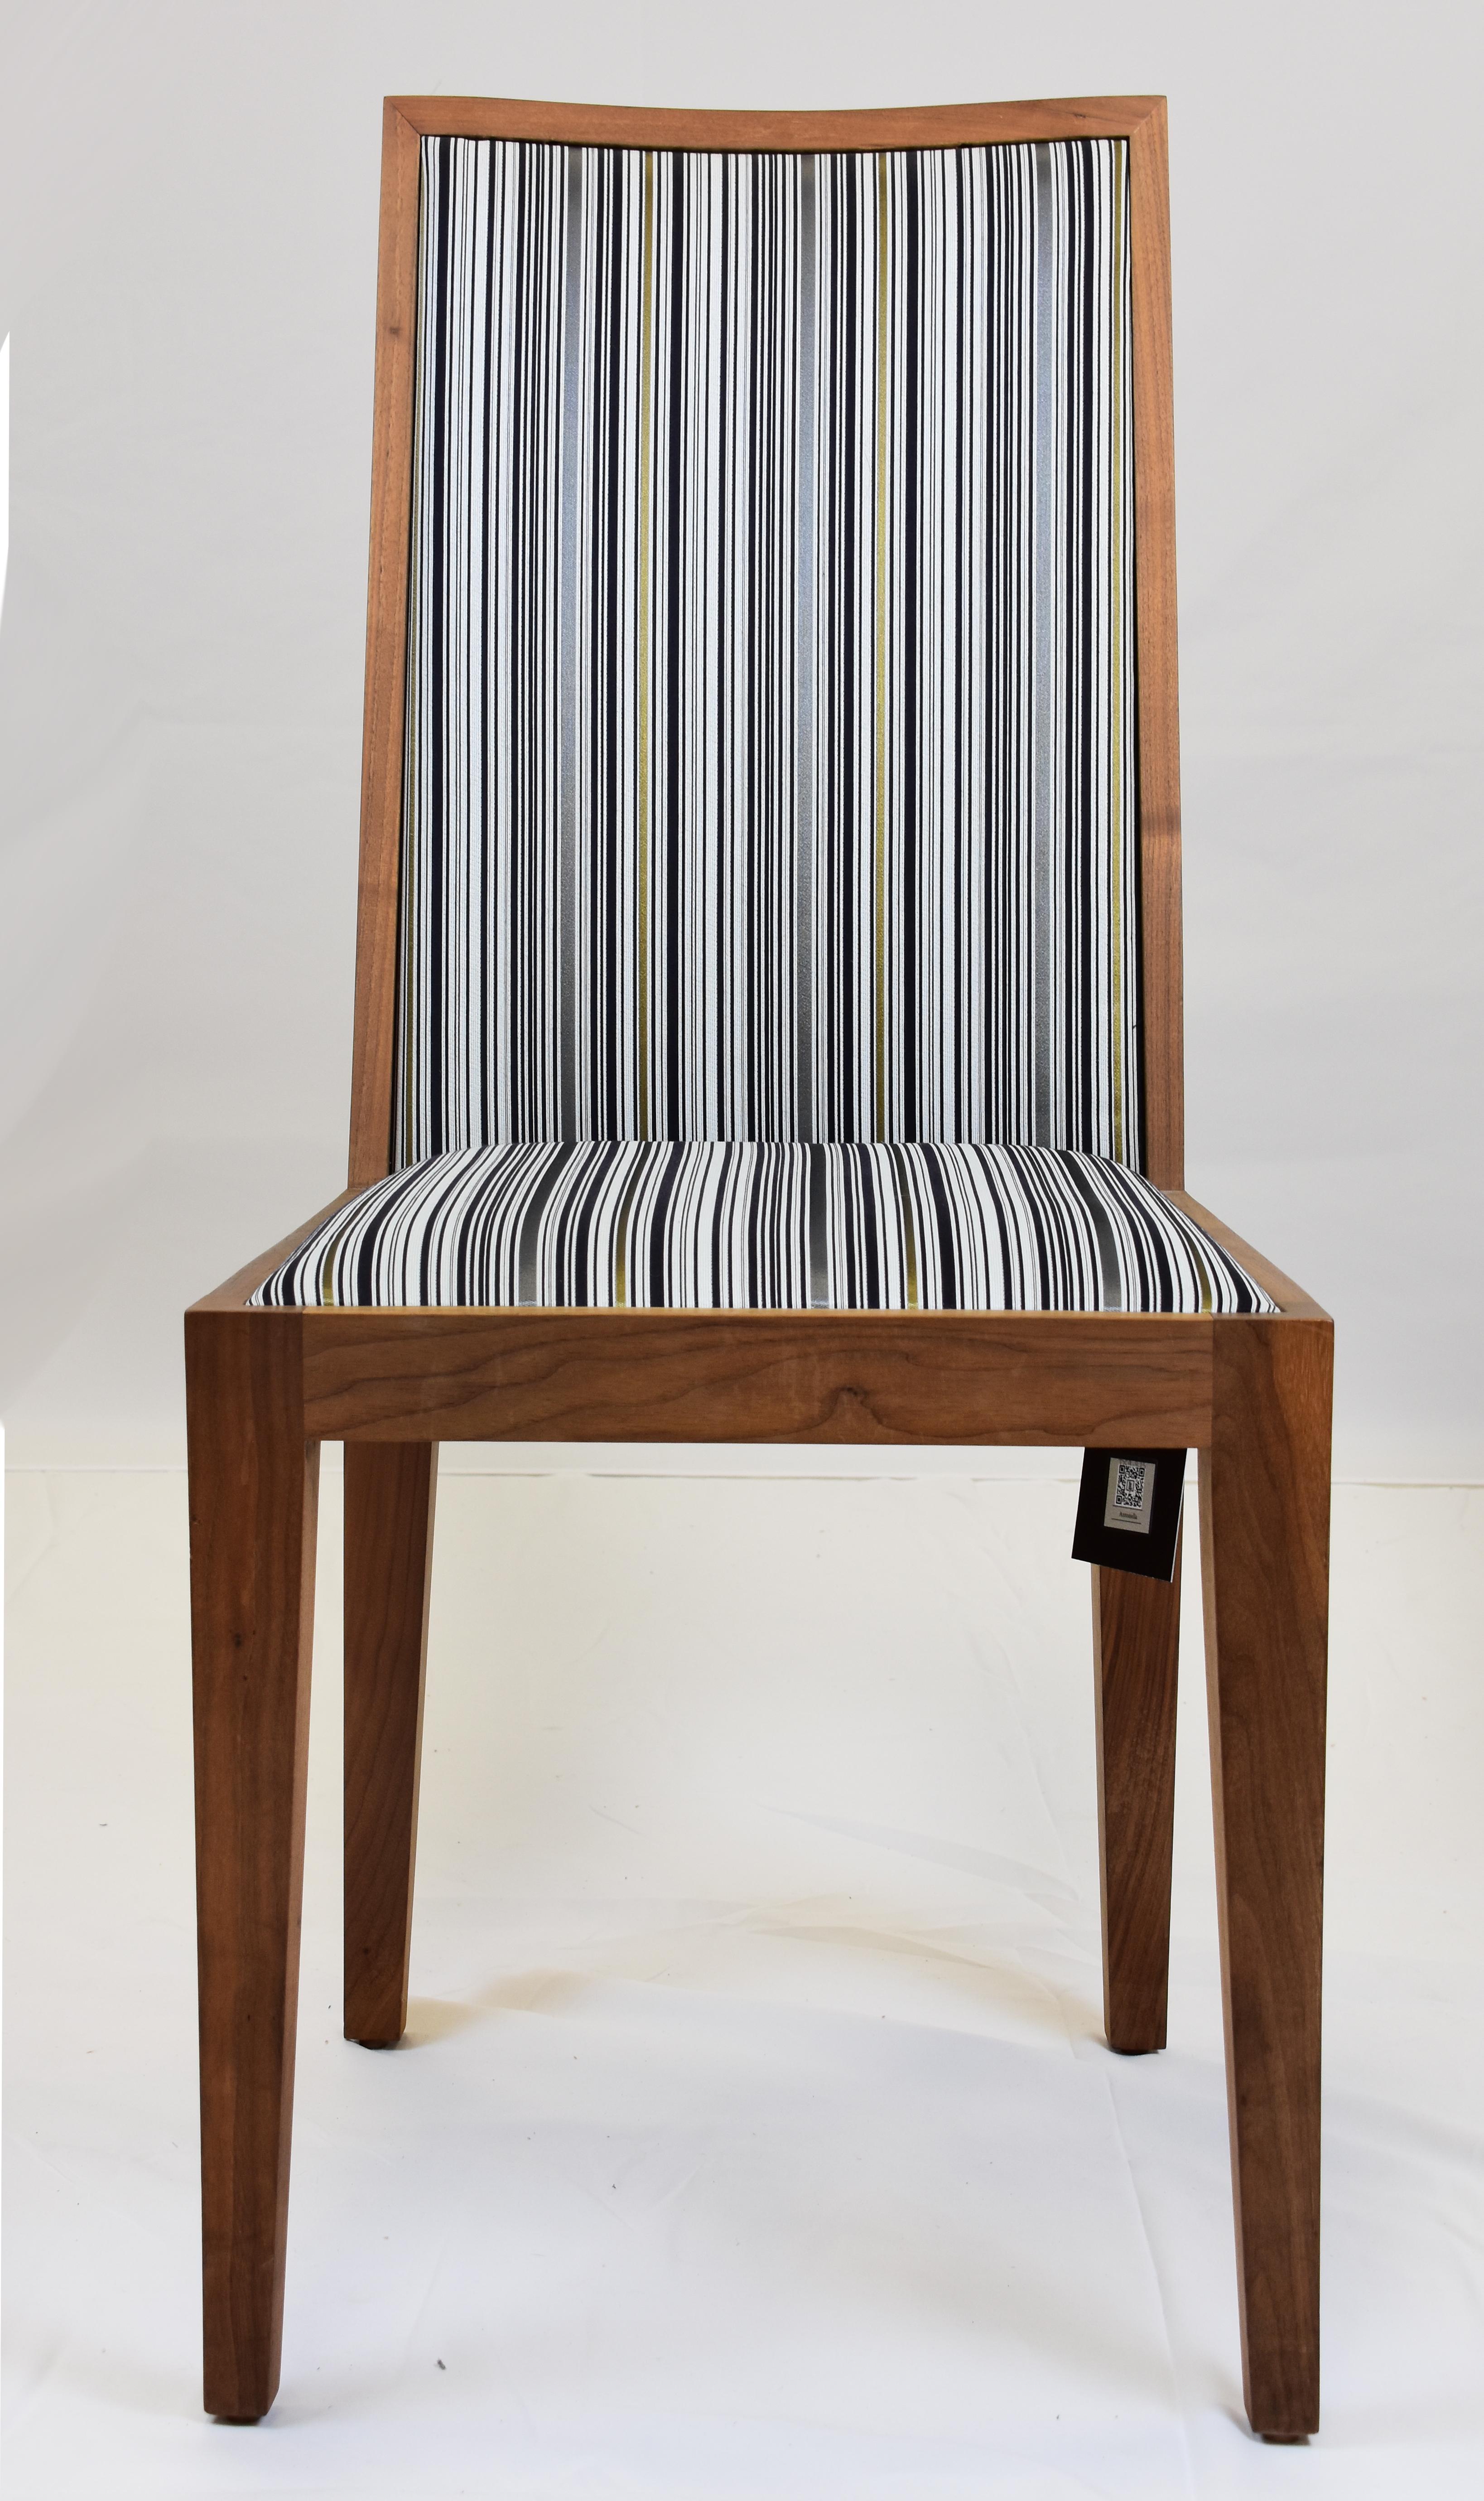 Le Jeune Upholstery Antonella Walnut Dining Chair Showroom Model

Nous proposons à la vente une chaise de salle à manger sans bras de Le Jeune Upholstery, modèle de salle d'exposition, avec un revêtement en mélange rayé gris et bleu. La chaise peut